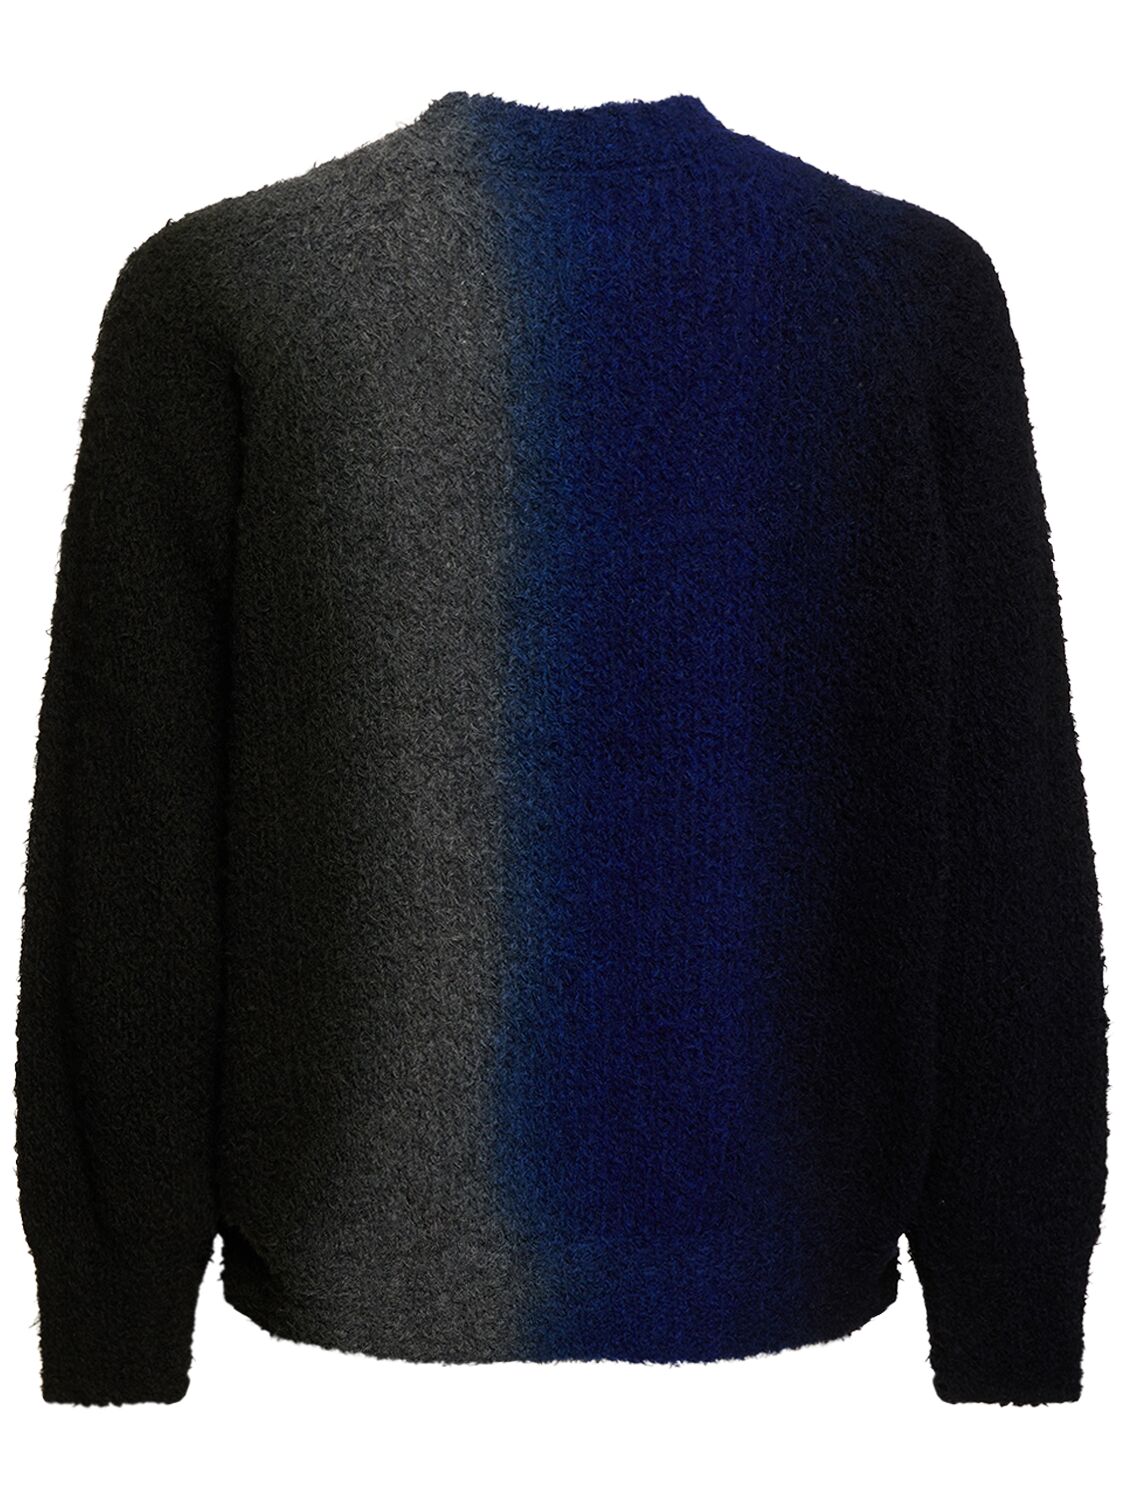 Tie Dye Knit Sweater